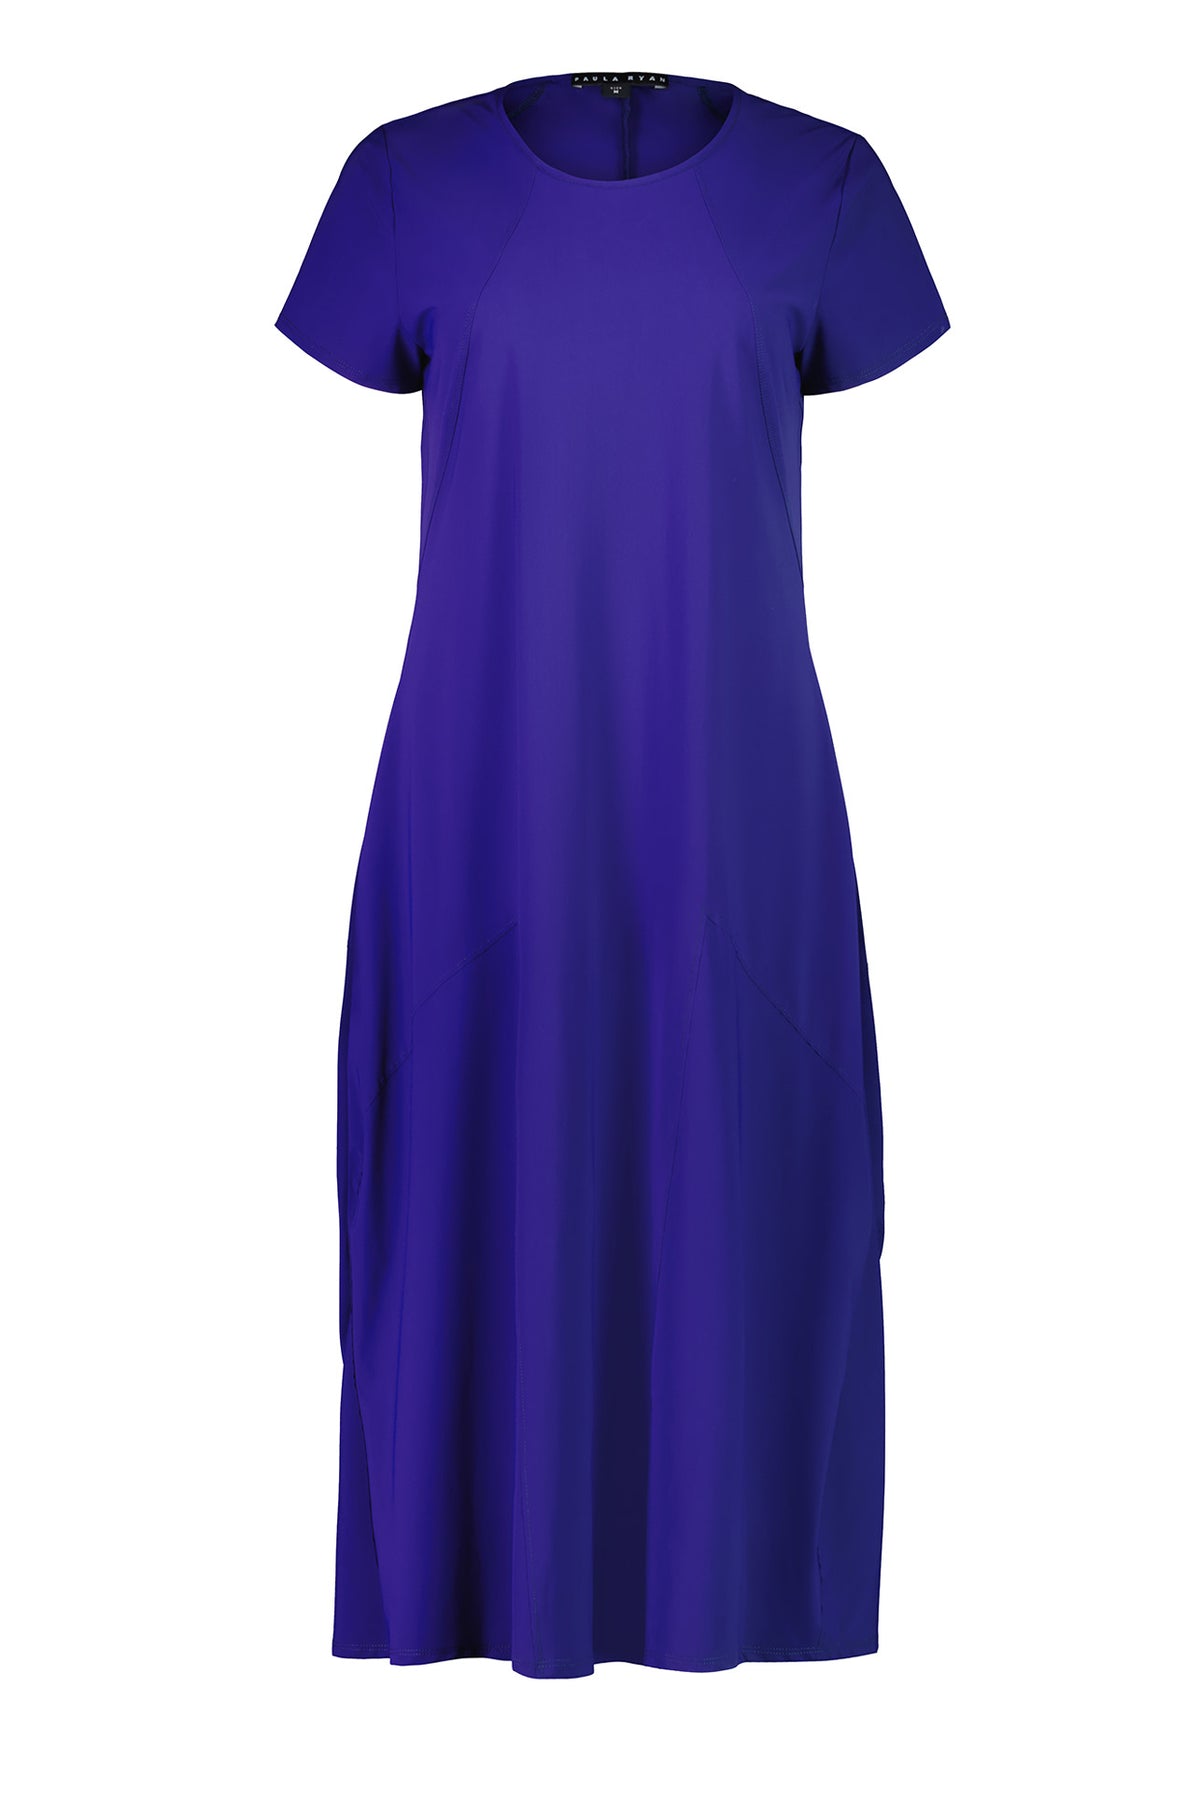 Paula Ryan Panelled Godet Cap Sleeve Tulip Dress - Indigo